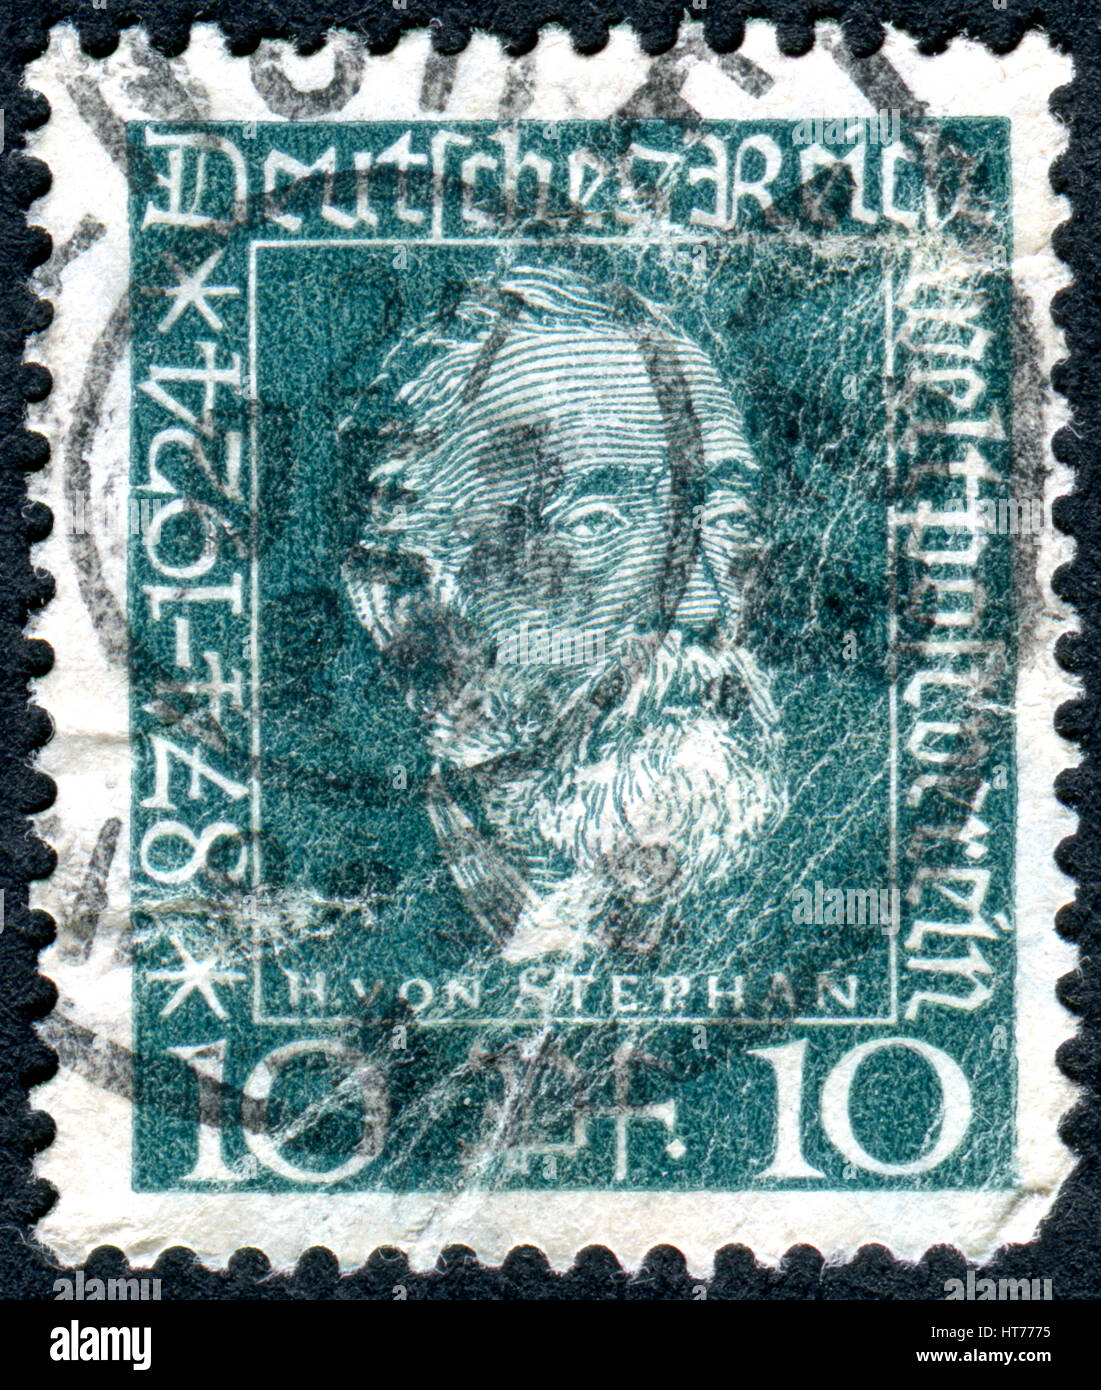 Un timbro stampato in Germania (Deutsches Reich), mostra un ritratto di una generale post direttore per l'impero tedesco Heinrich von Stephan Foto Stock